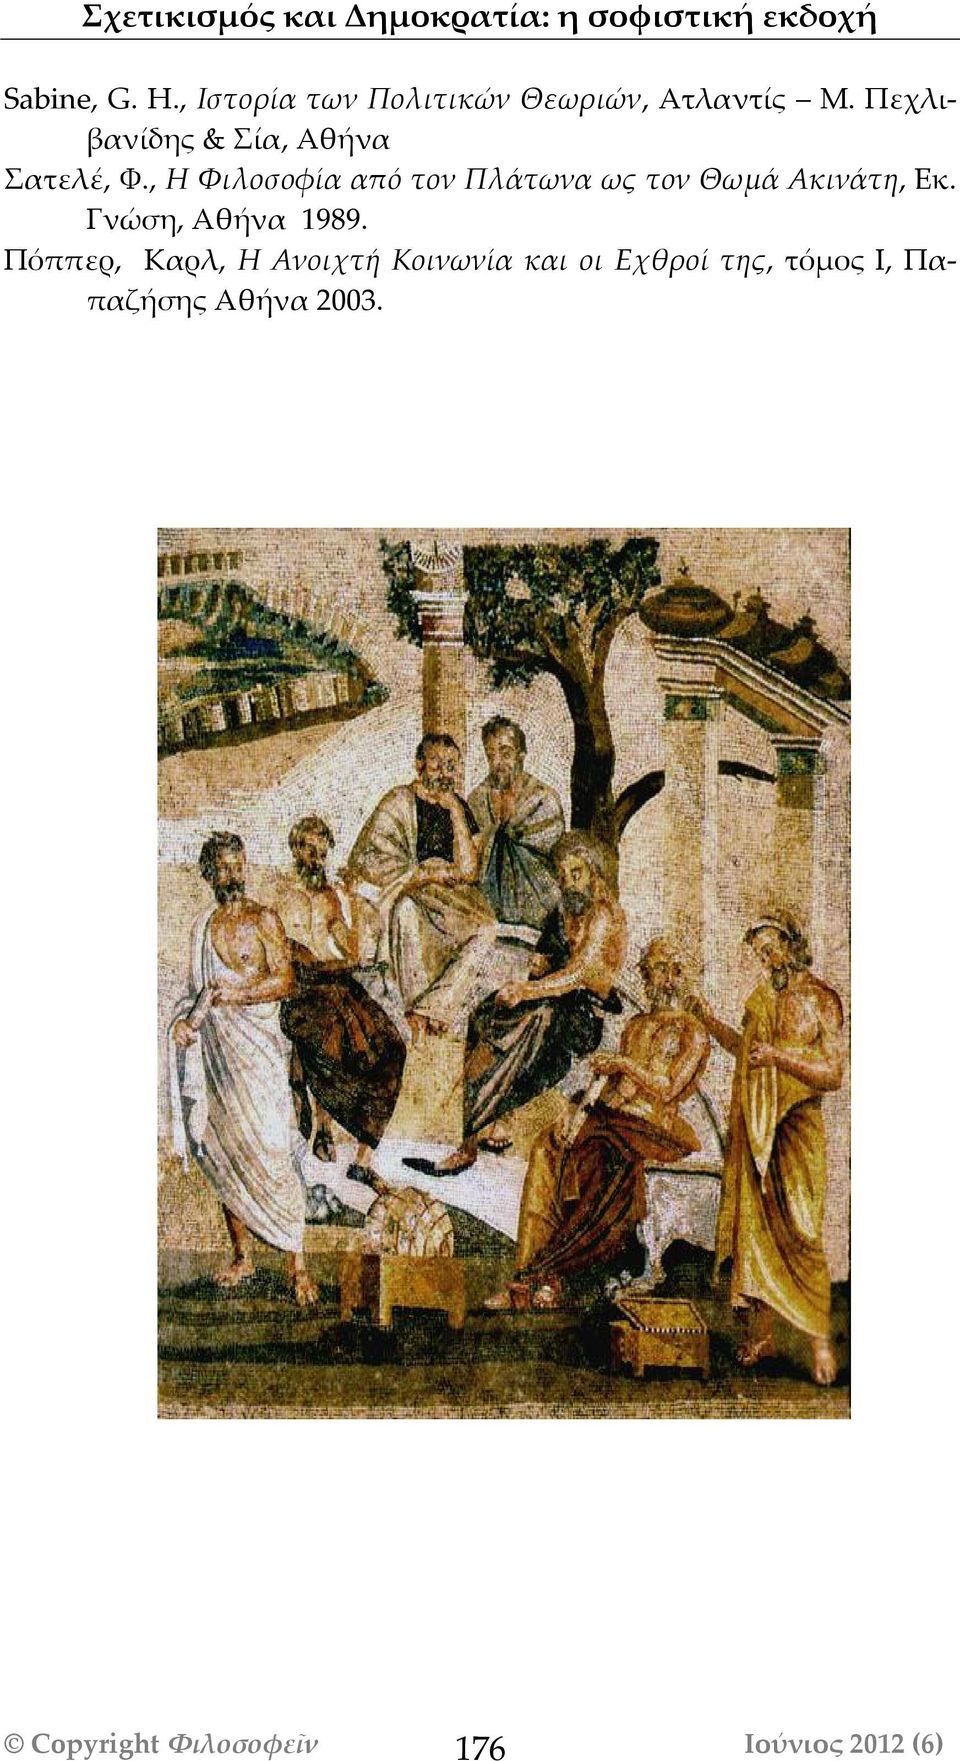 , Η Φιλοσοφία από τον Πλάτωνα ως τον Θωμά Ακινάτη, Εκ. Γνώση, Αθήνα 1989.